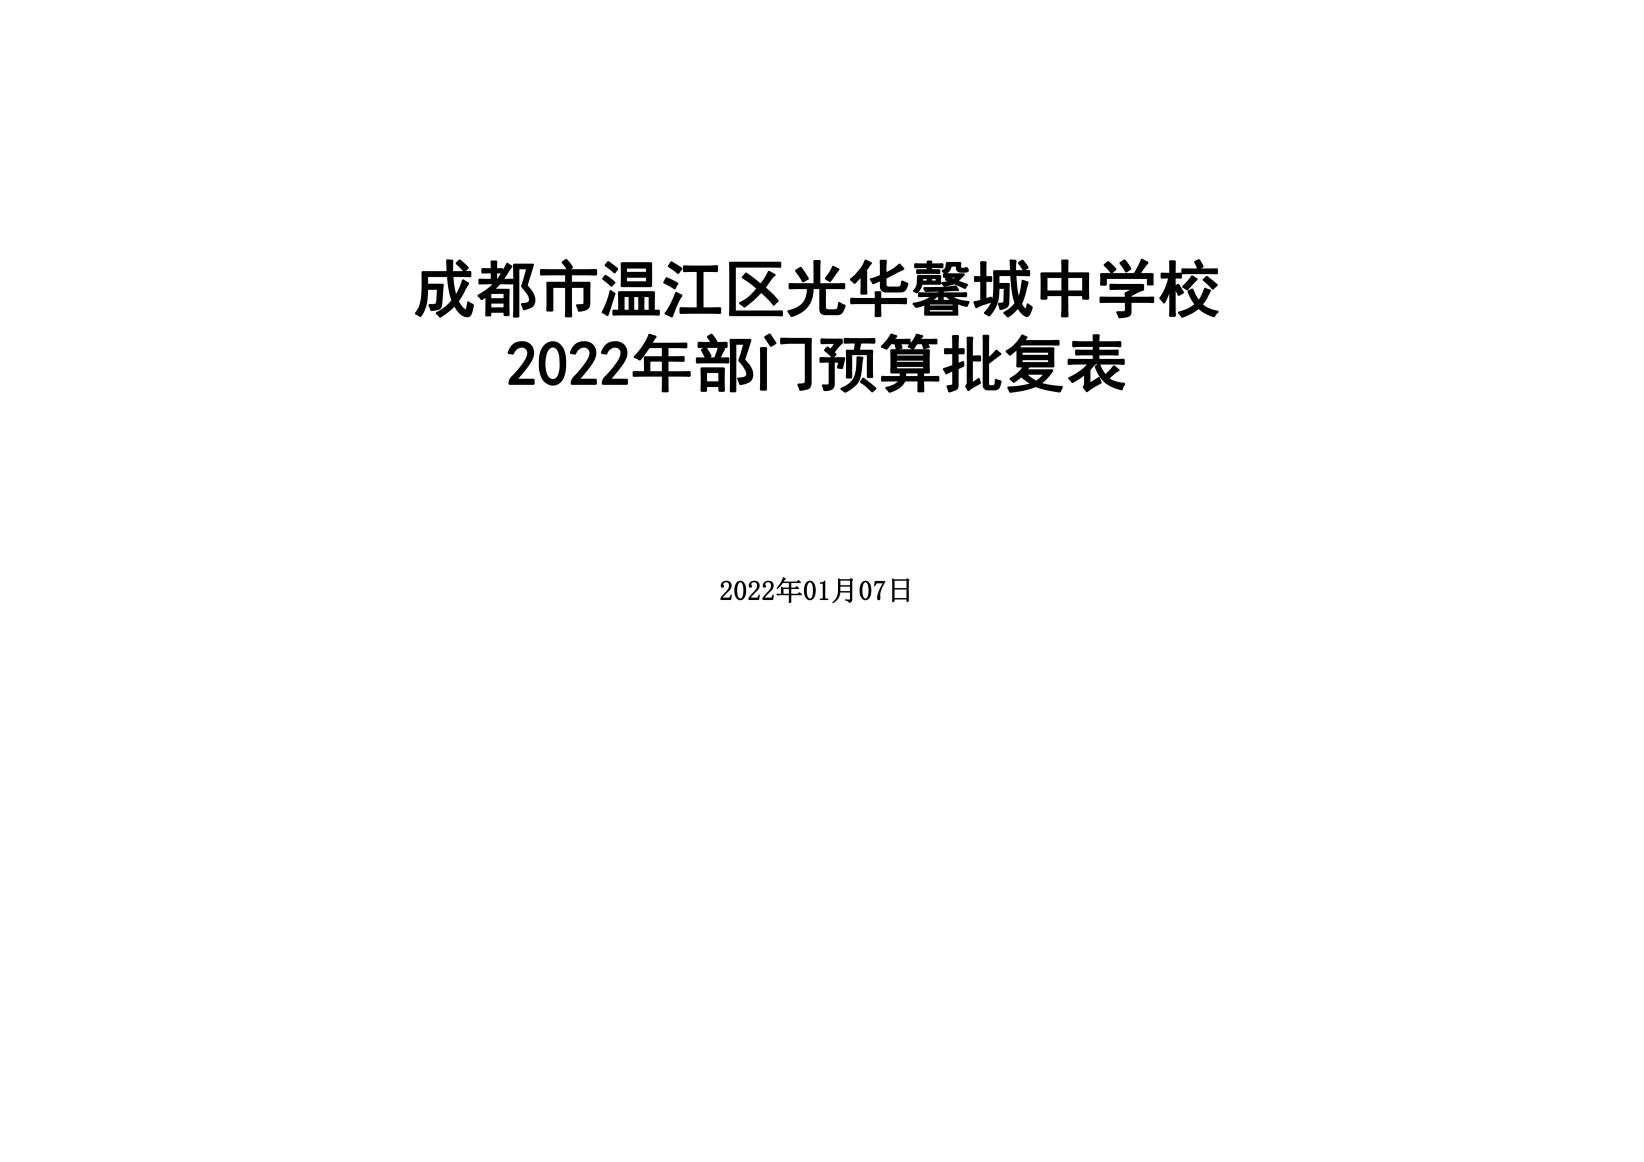 2022年部门预算公开（成都市温江区光华馨城中学校）（新）_35